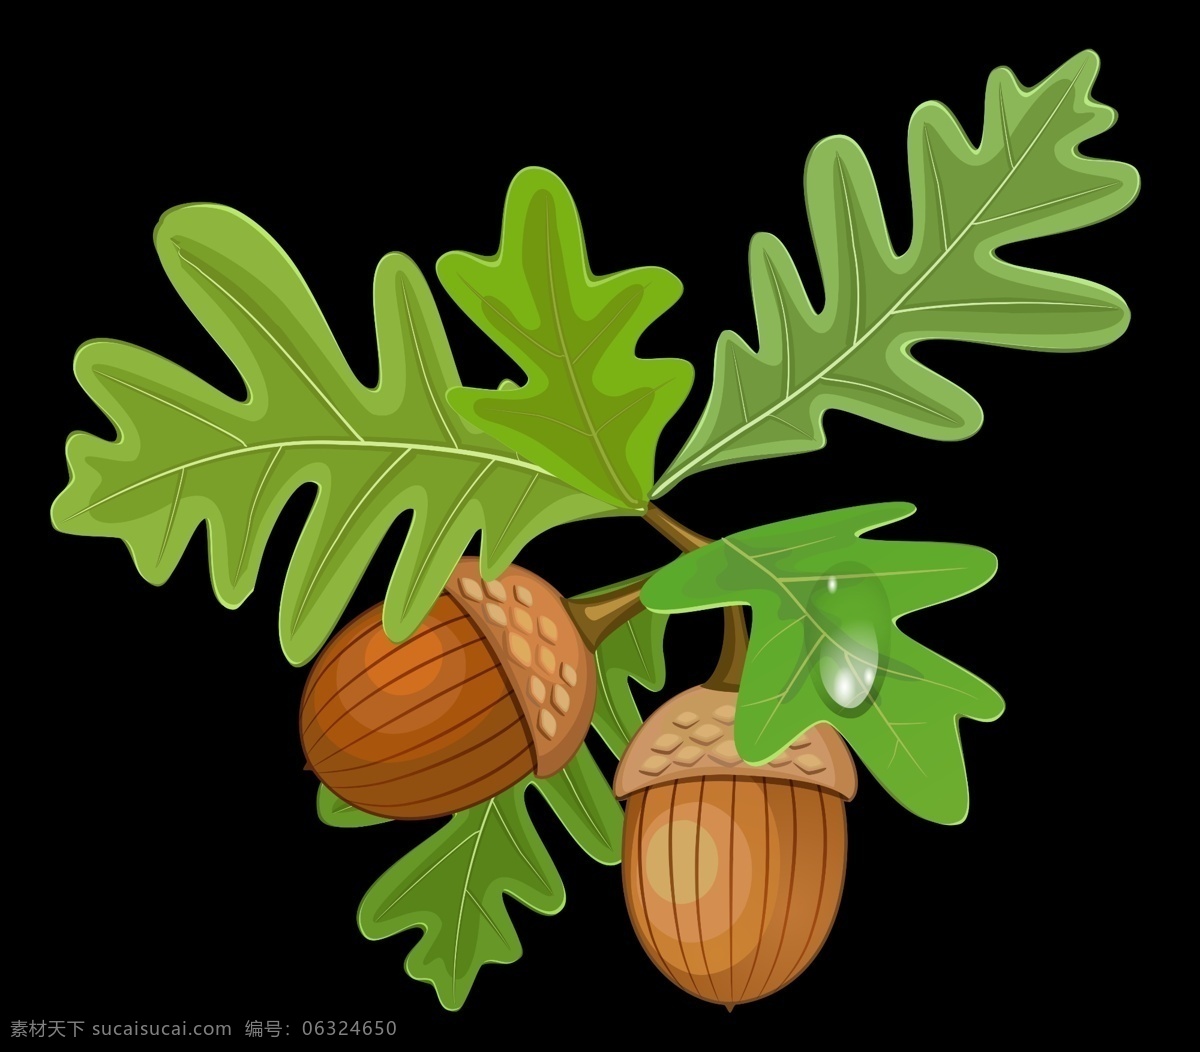 橡栗 橡子 橡实 果实 橡树 种子 橡籽 橡树果 橡树子 树种子 青橡果 橡树种子 实用性 强 生物世界 树木树叶